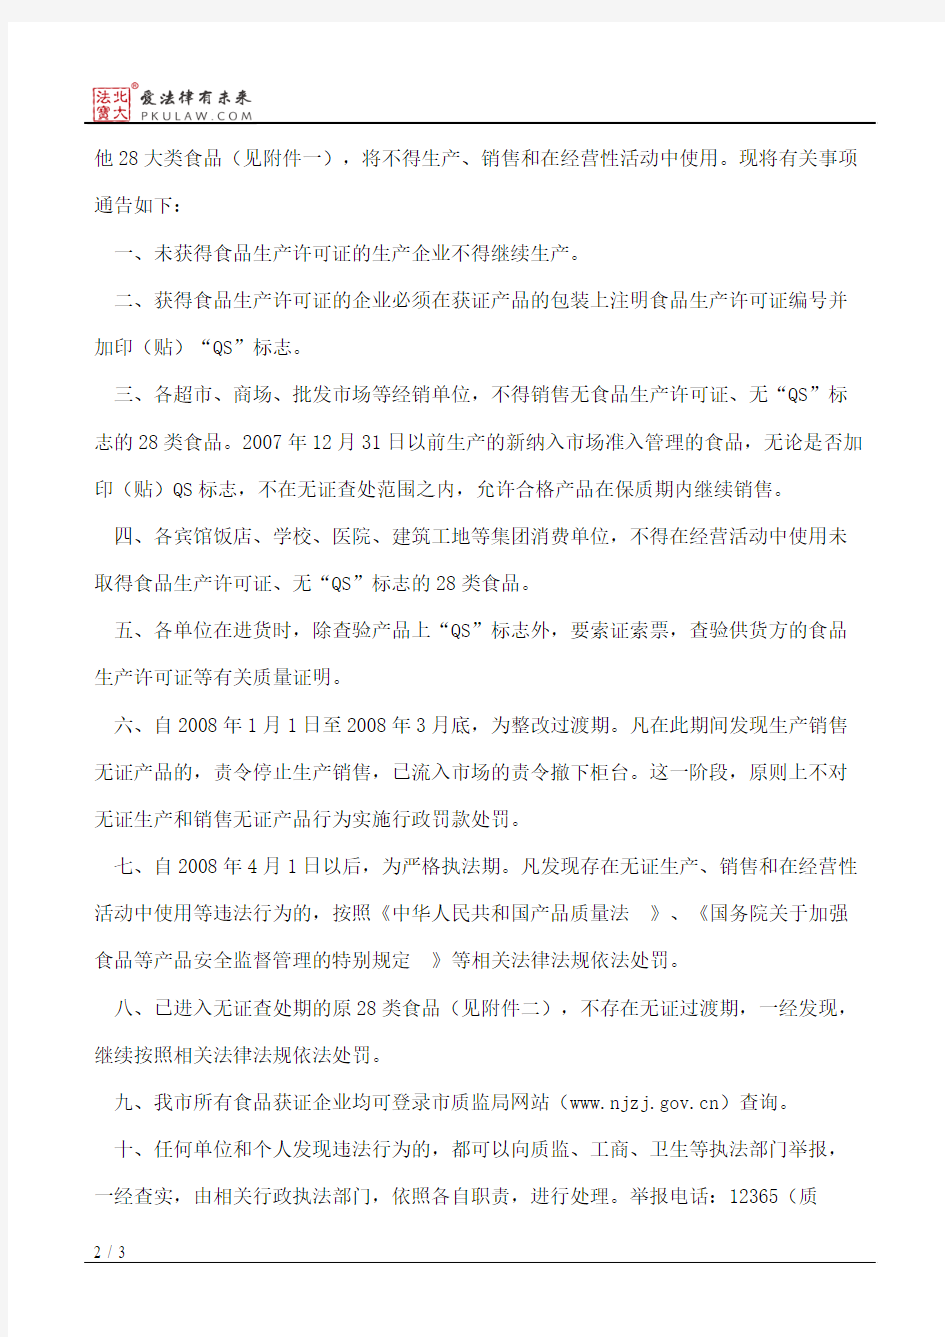 南京市质量技术监督局、南京市商业贸易局、南京市工商行政管理局